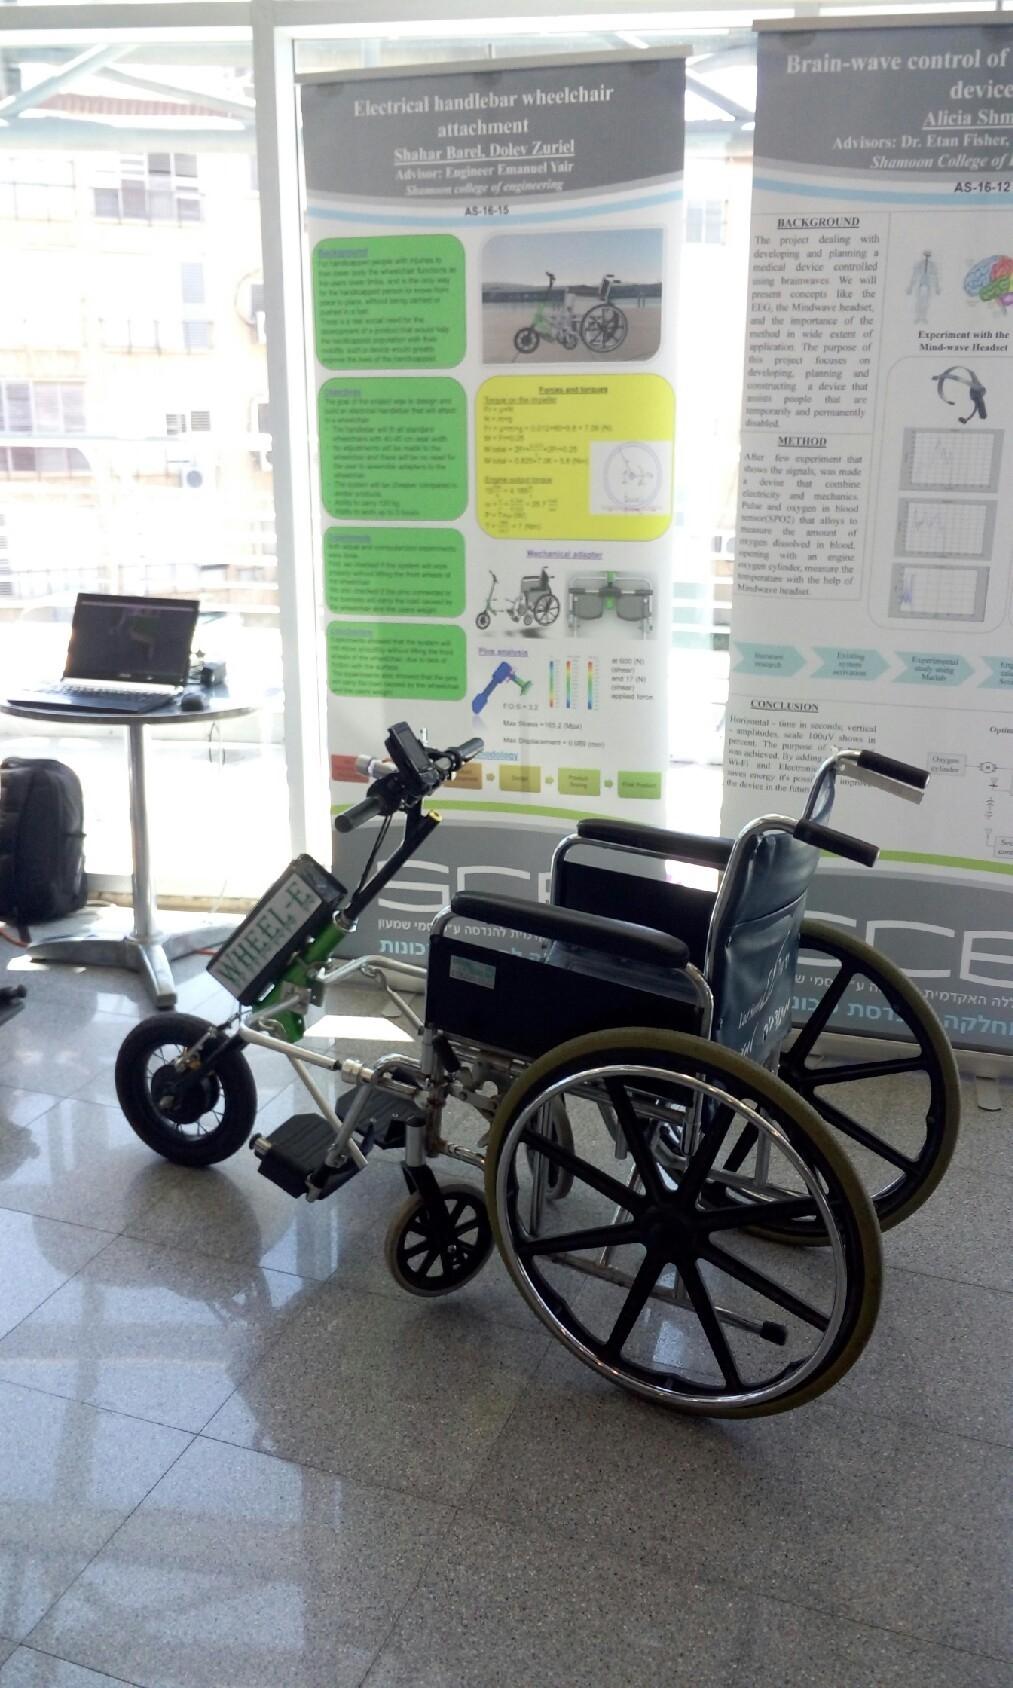 כיסא גלגלים עם כידון חשמלי. קרדיט יח"צ